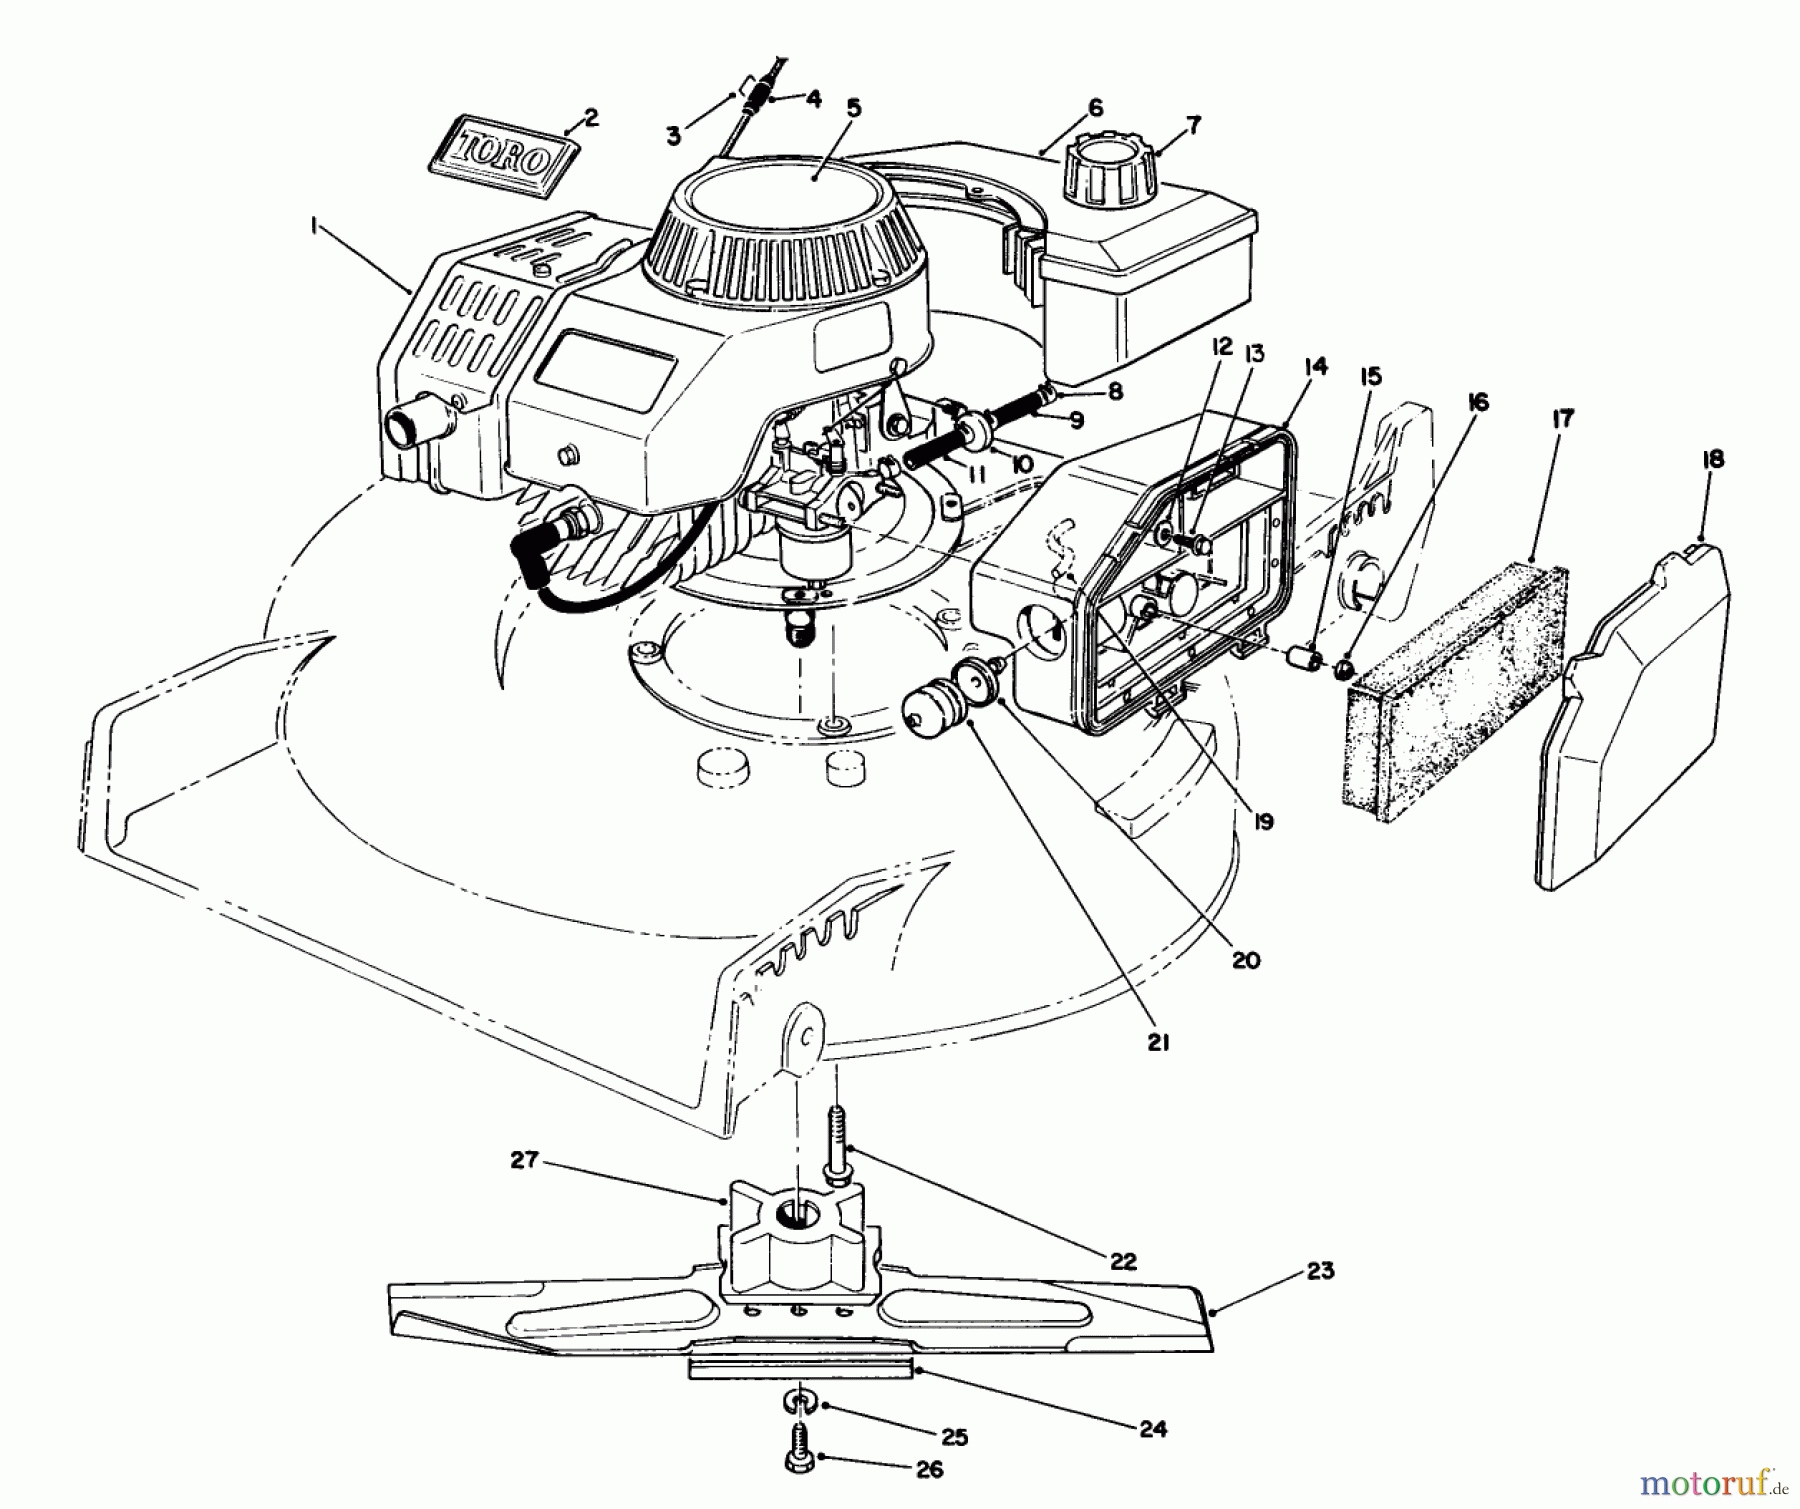  Toro Neu Mowers, Walk-Behind Seite 1 20103 - Toro Lawnmower, 1991 (1000001-1999999) ENGINE ASSEMBLY